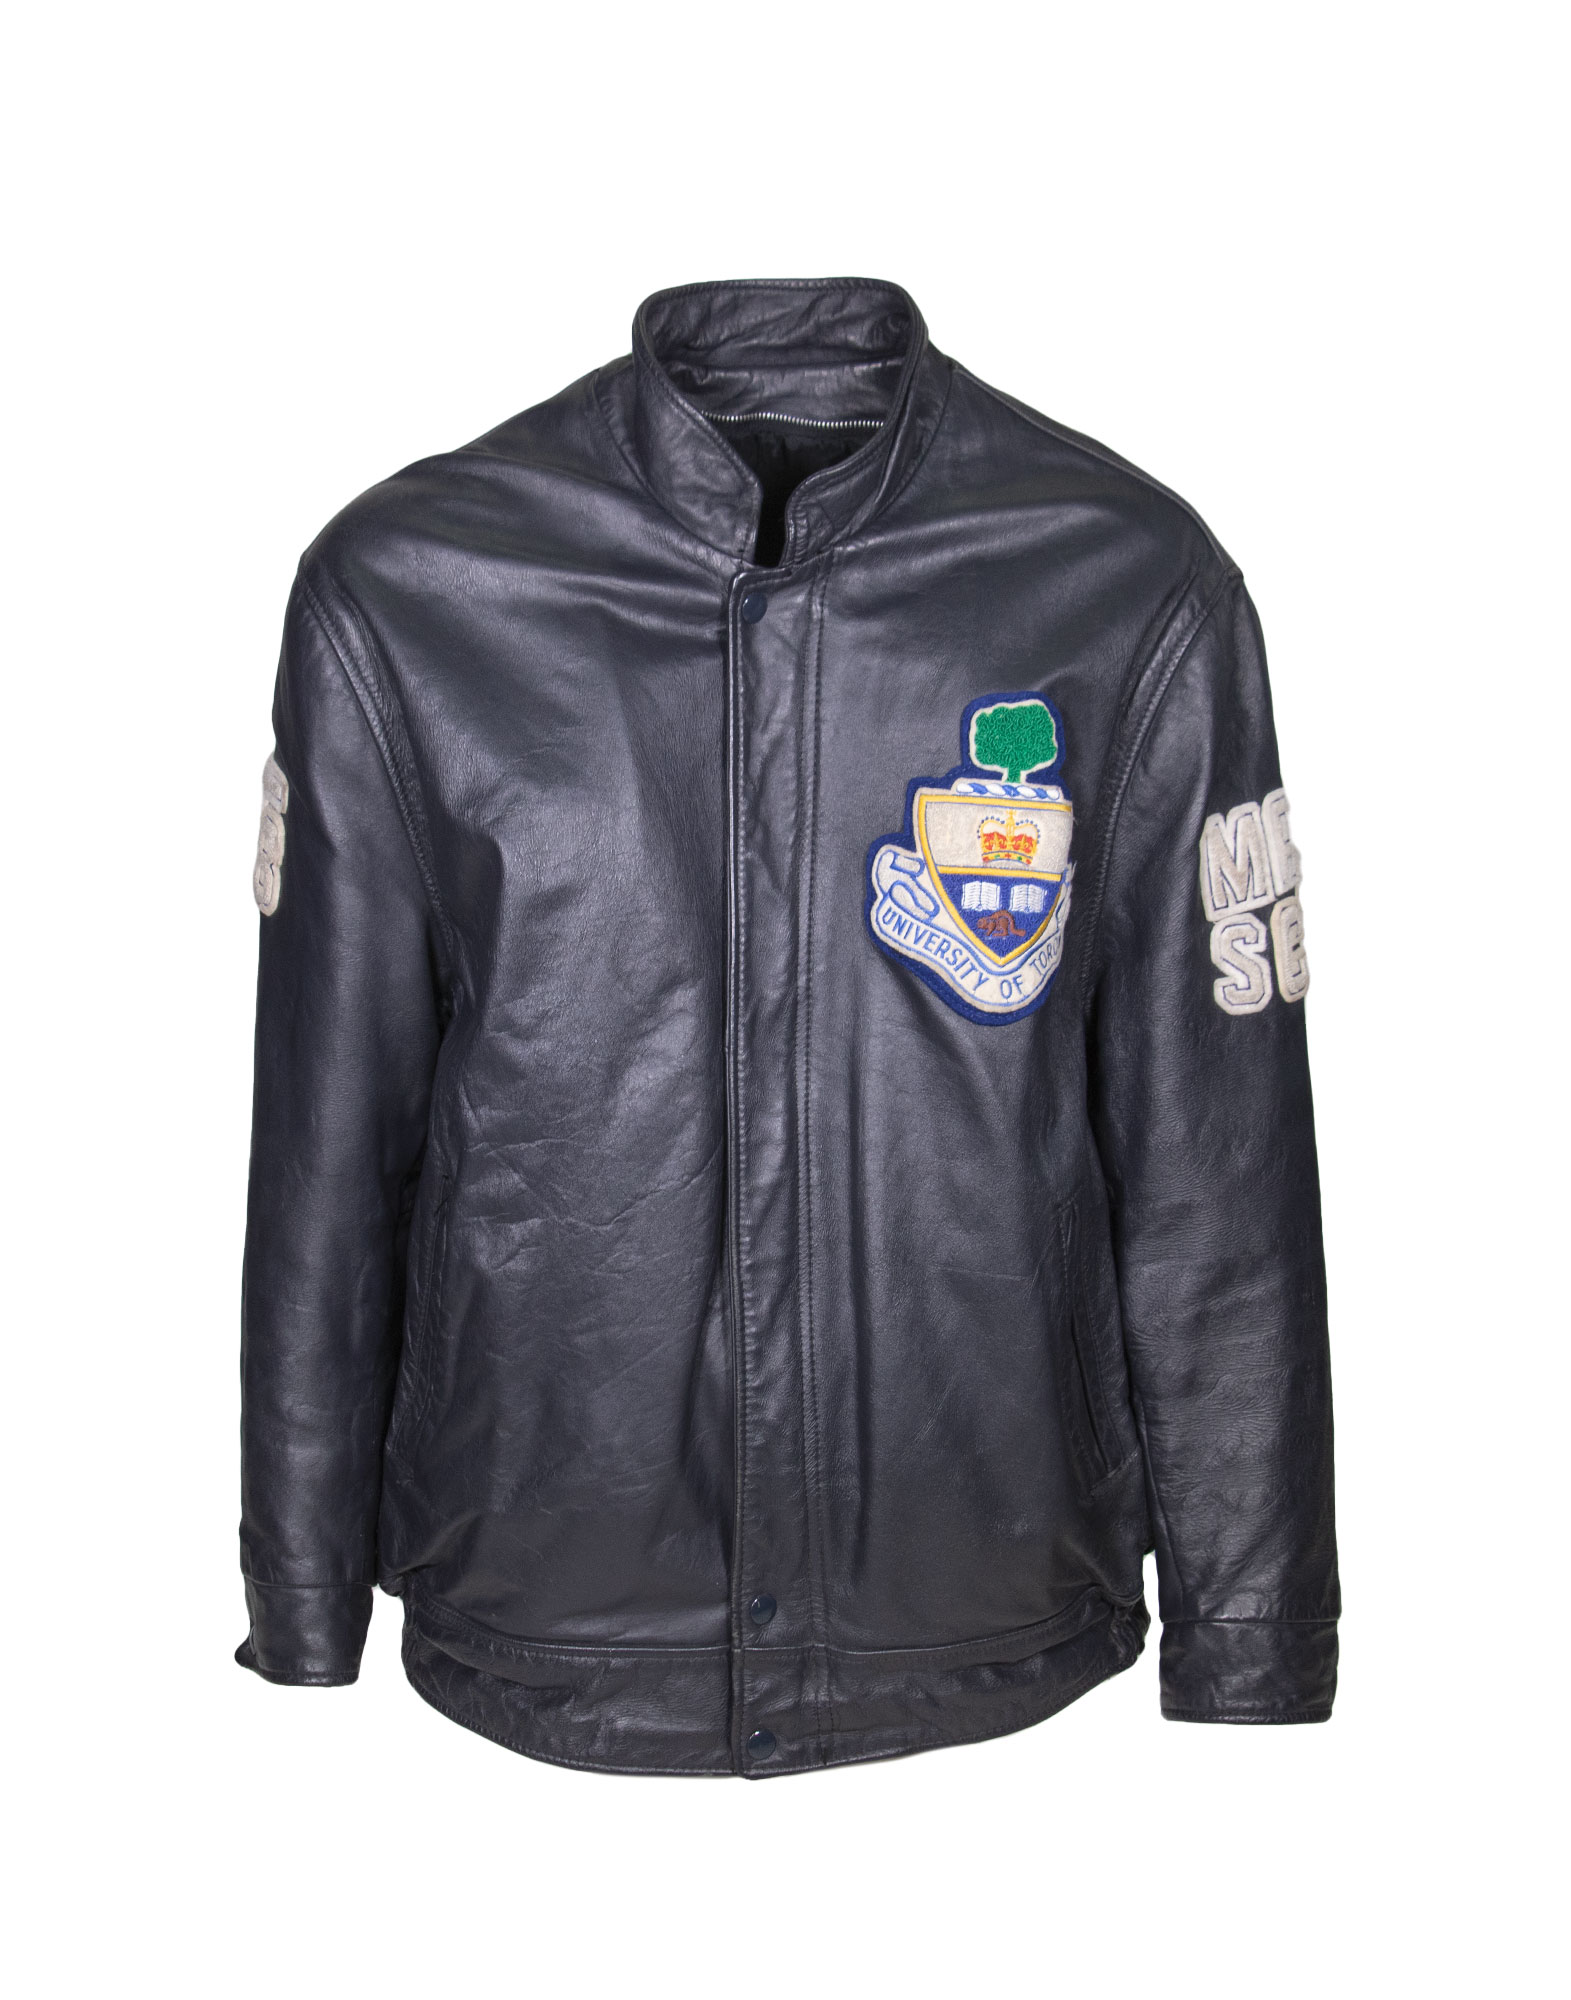 Avon Sportswear - 80s Leather jacket